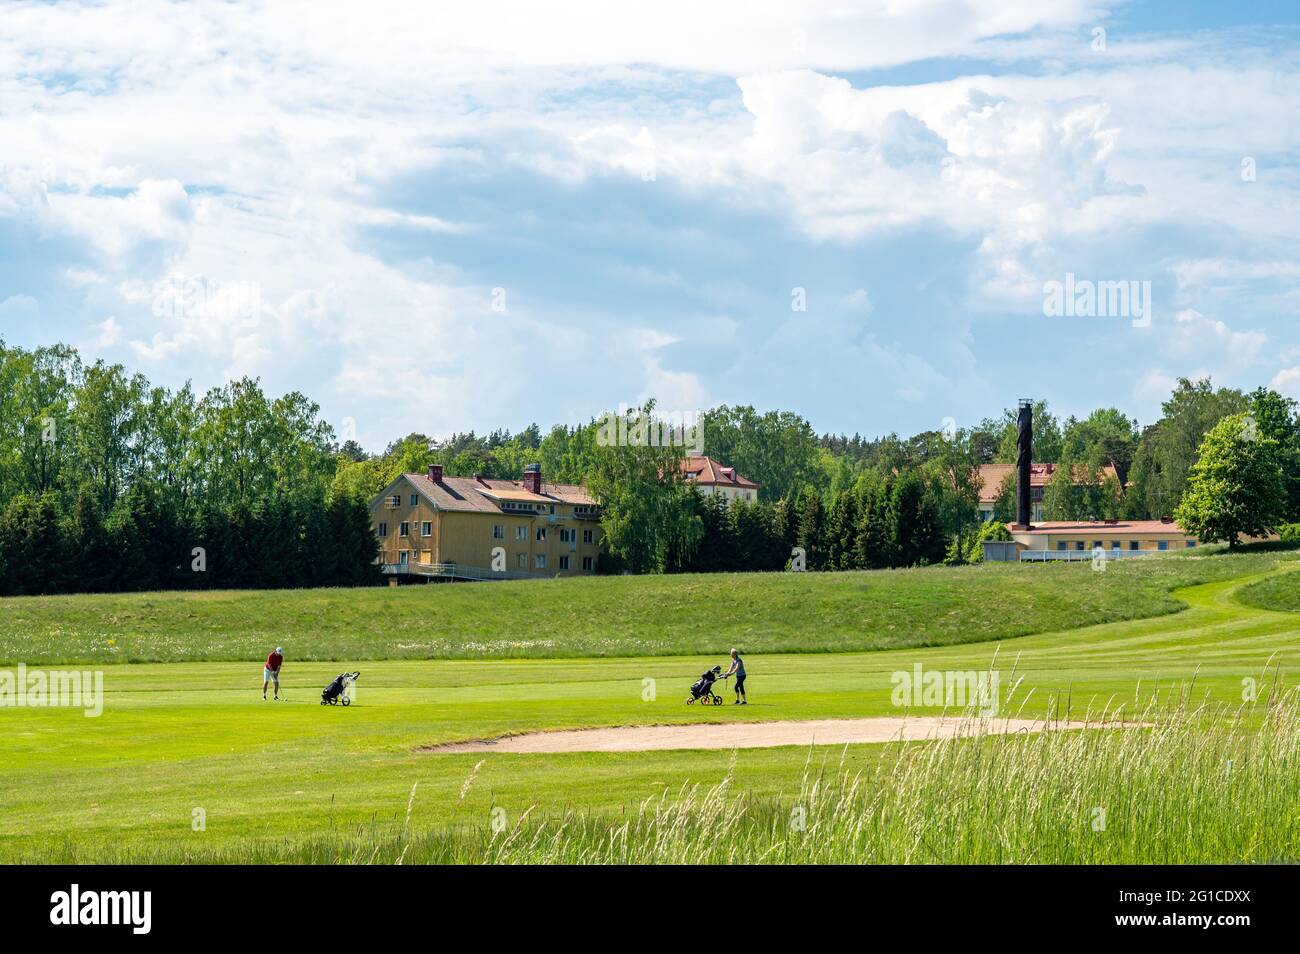 Grytsberg Golf Club dans la campagne de Södermanland en Suède Banque D'Images